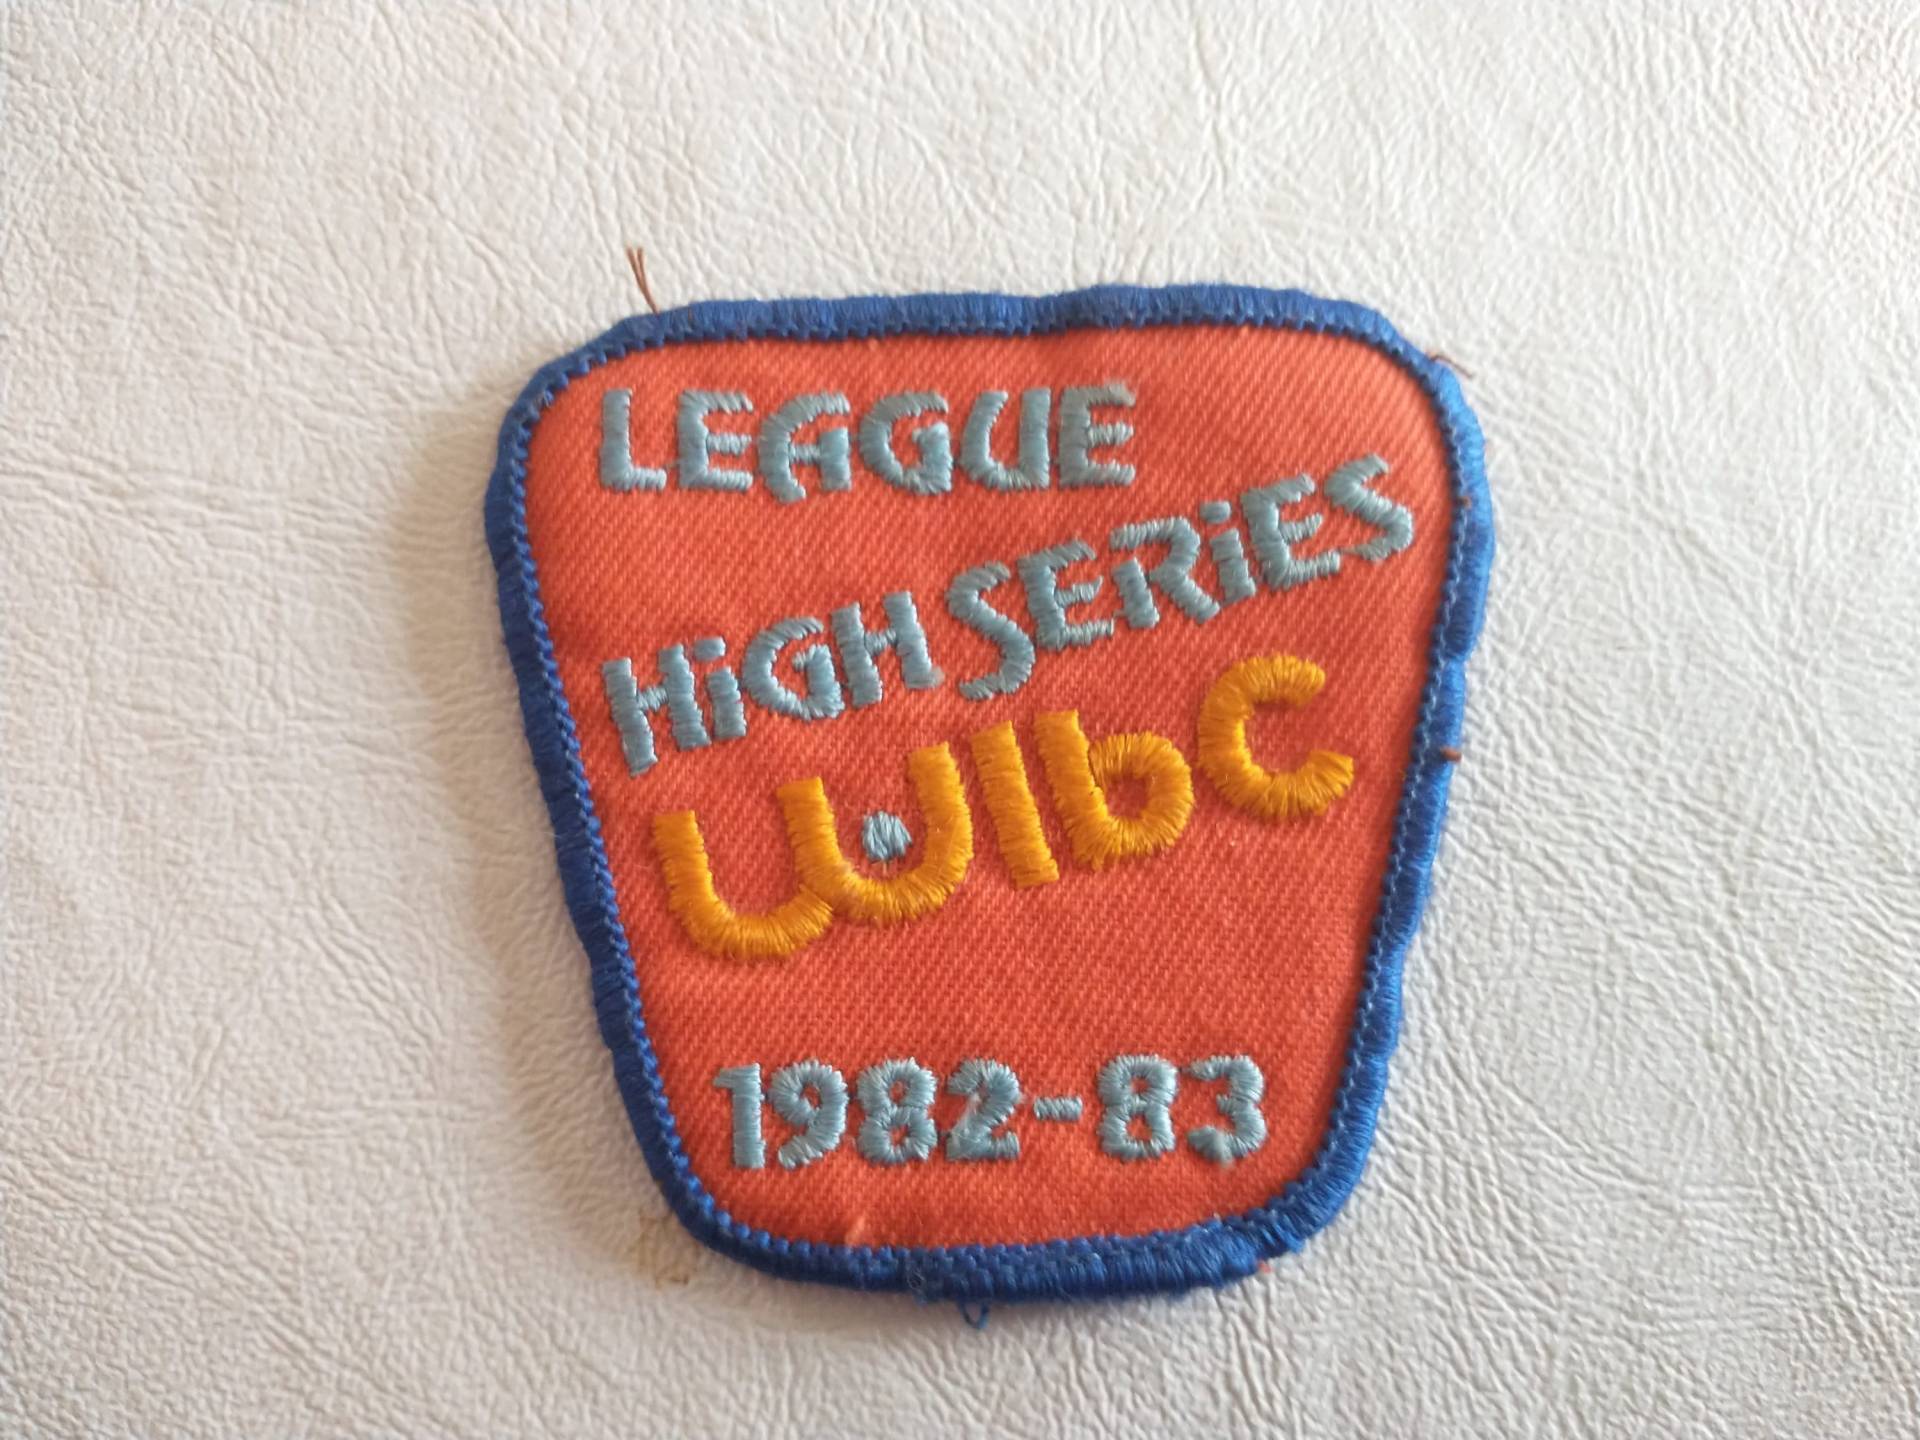 Vintage Wibc High Series Patch Bowling 1982-83 von lighterairvintage